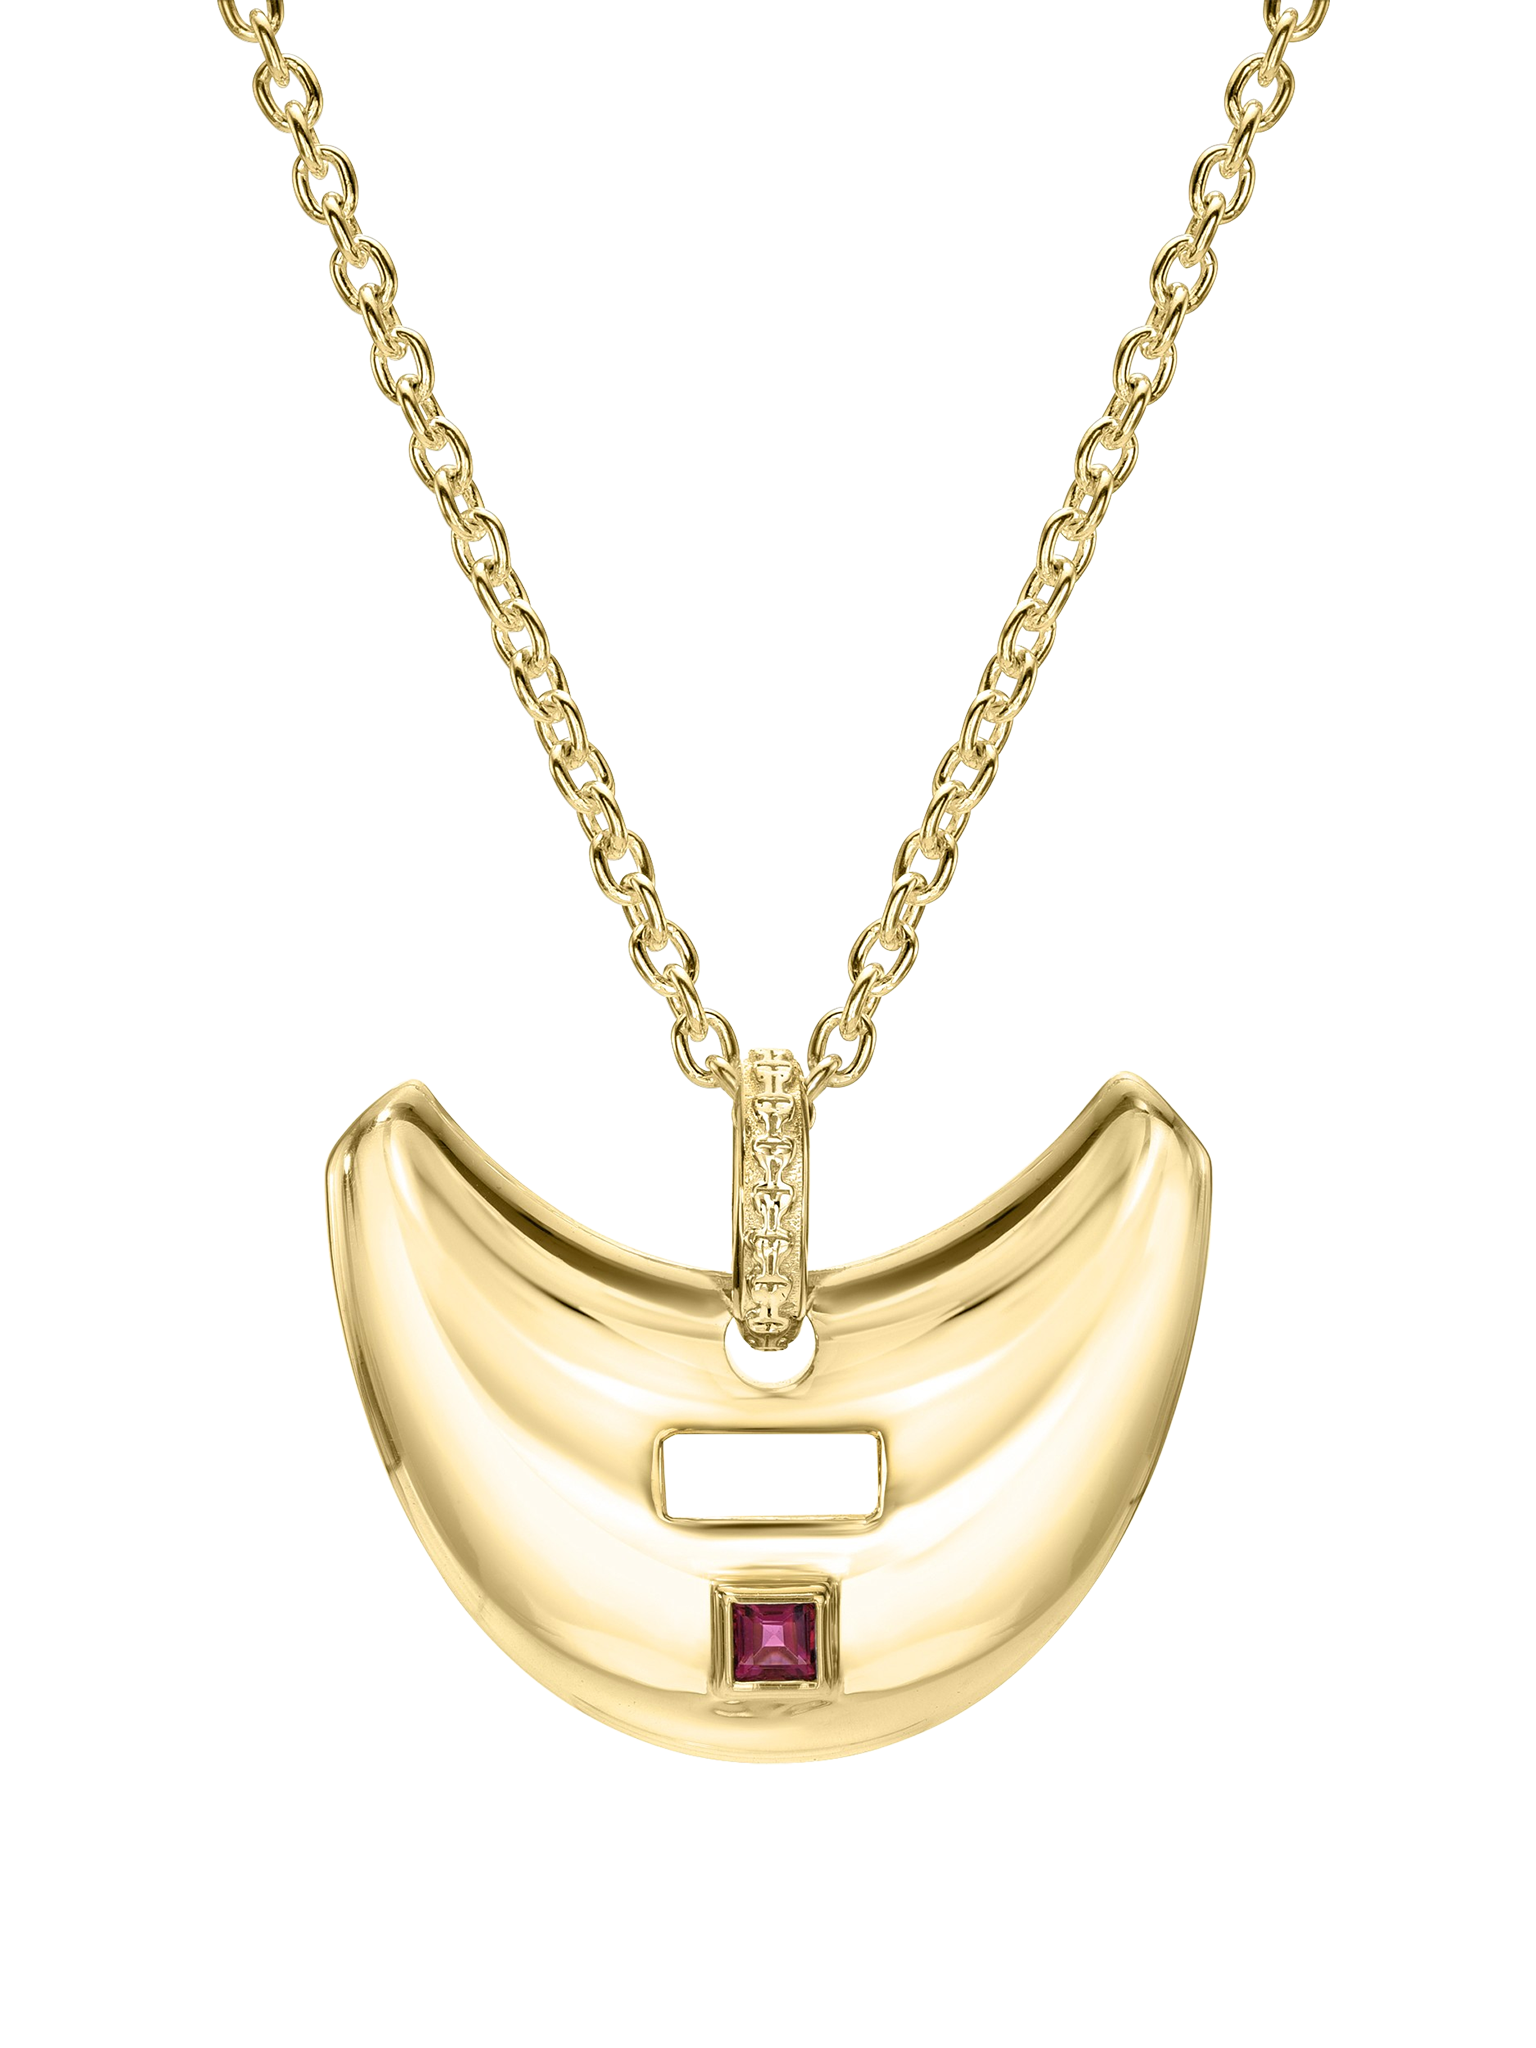 Saucer pendant with pink tourmaline